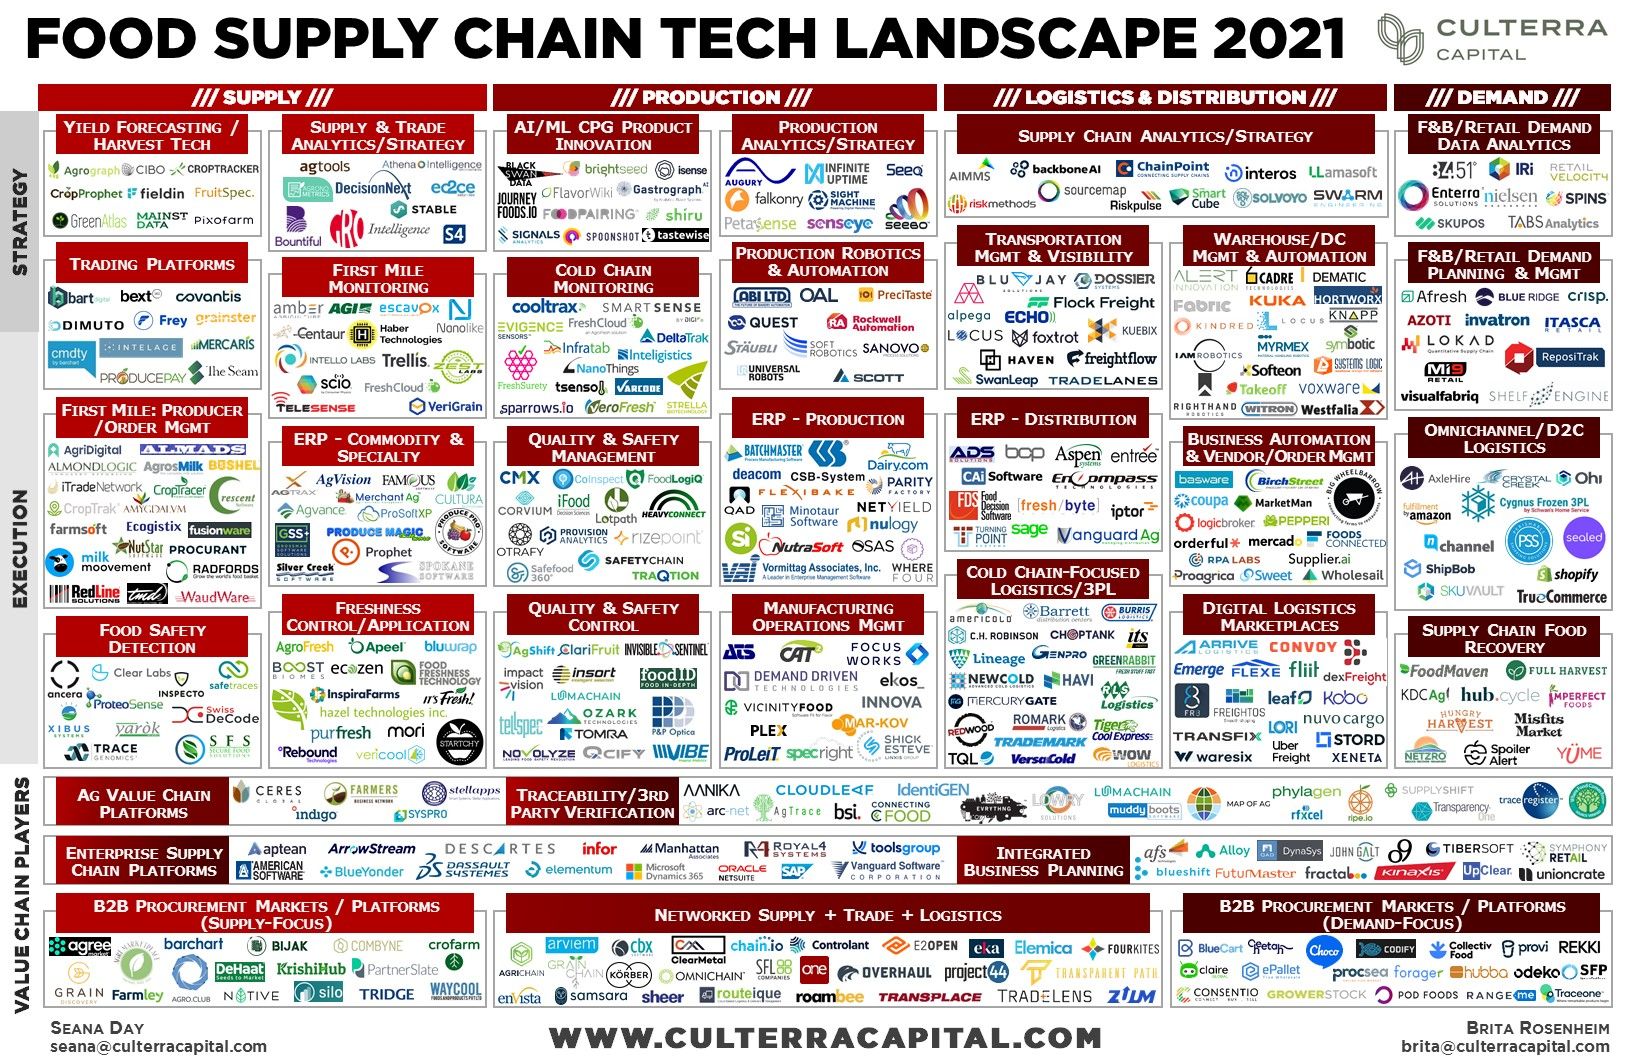 Panorama de empresas tecnológicas en la cadena de valor alimentaria en 2021